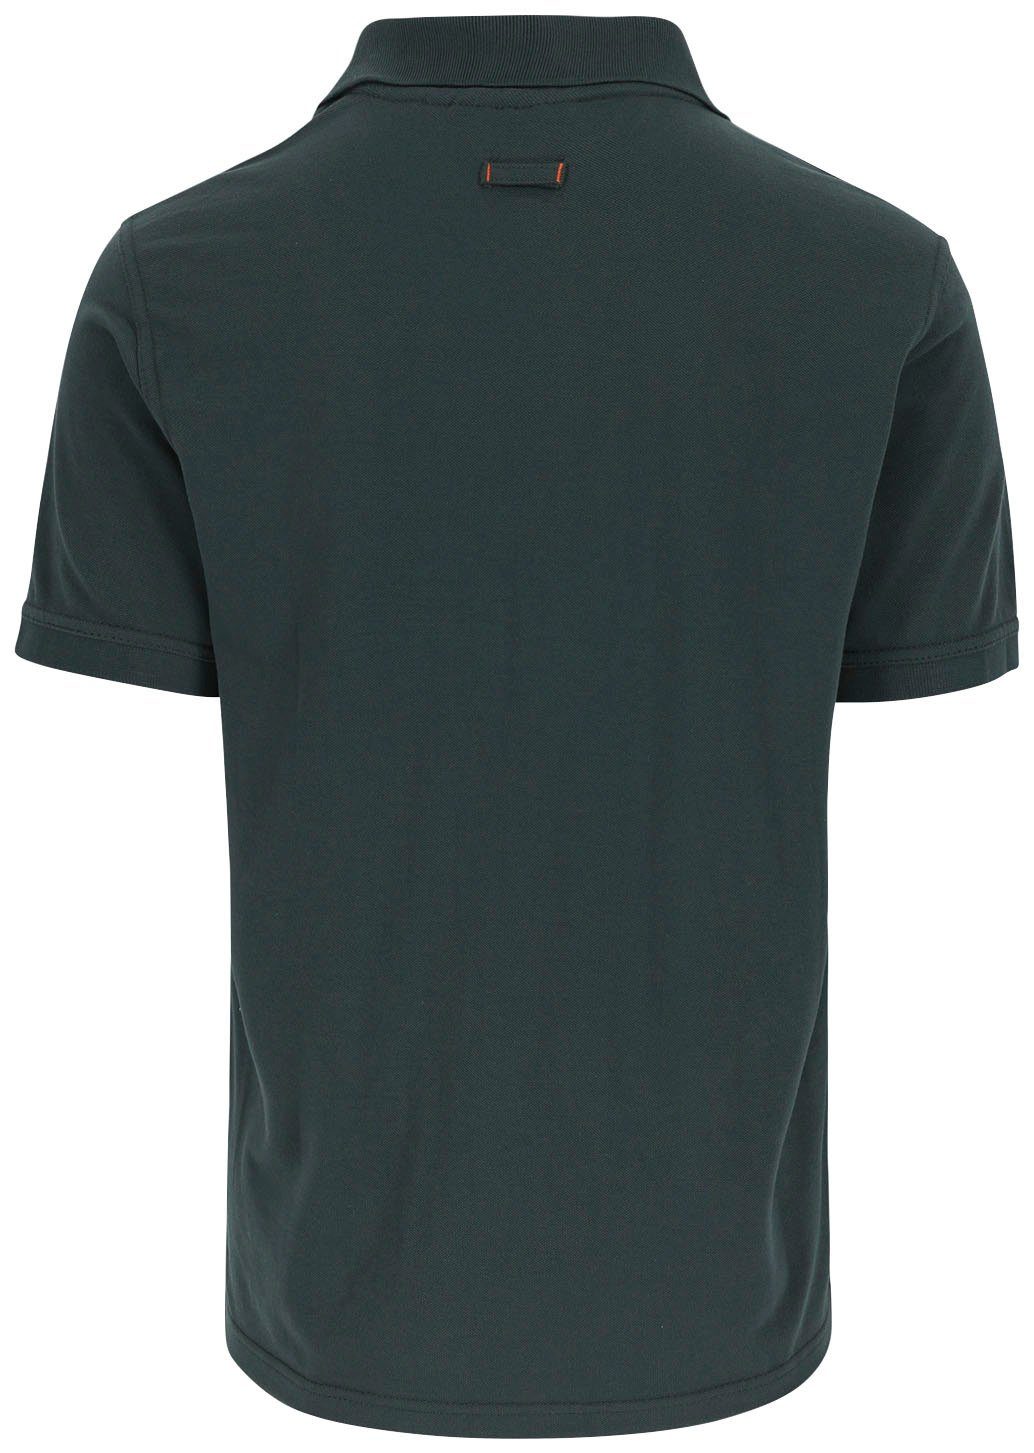 Herock Poloshirt Leo Rippstrick-Kragen und Bündchen, verschiedene 1 Polohemd Brusttasche, grün Kurzärmlig Farben